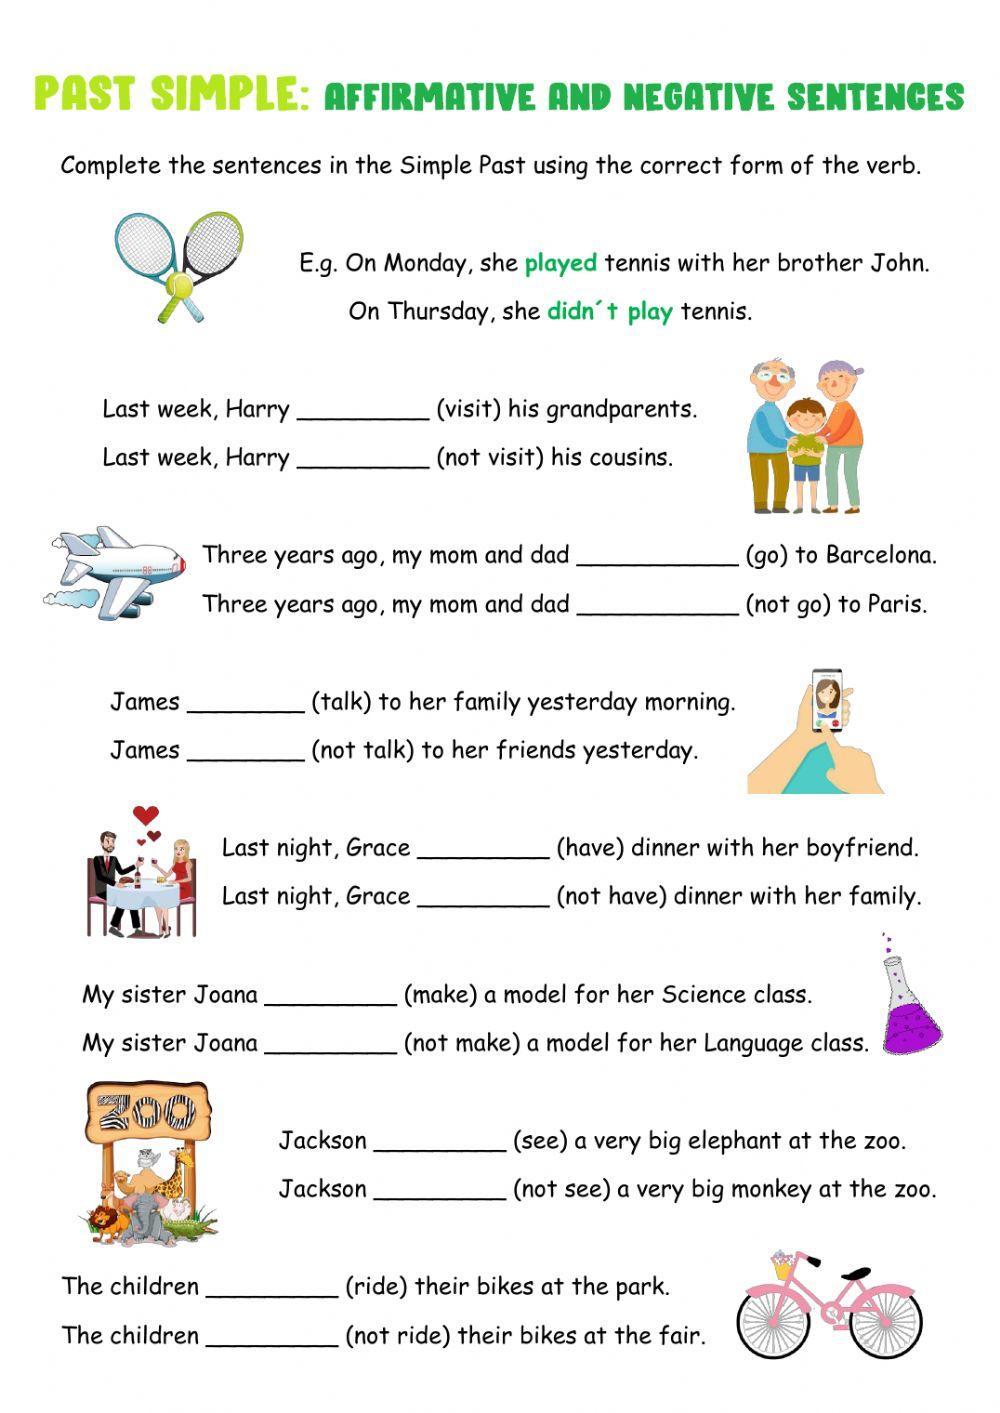 Simple Pasat Affirmative And Negative Sentences Worksheet Live Worksheets